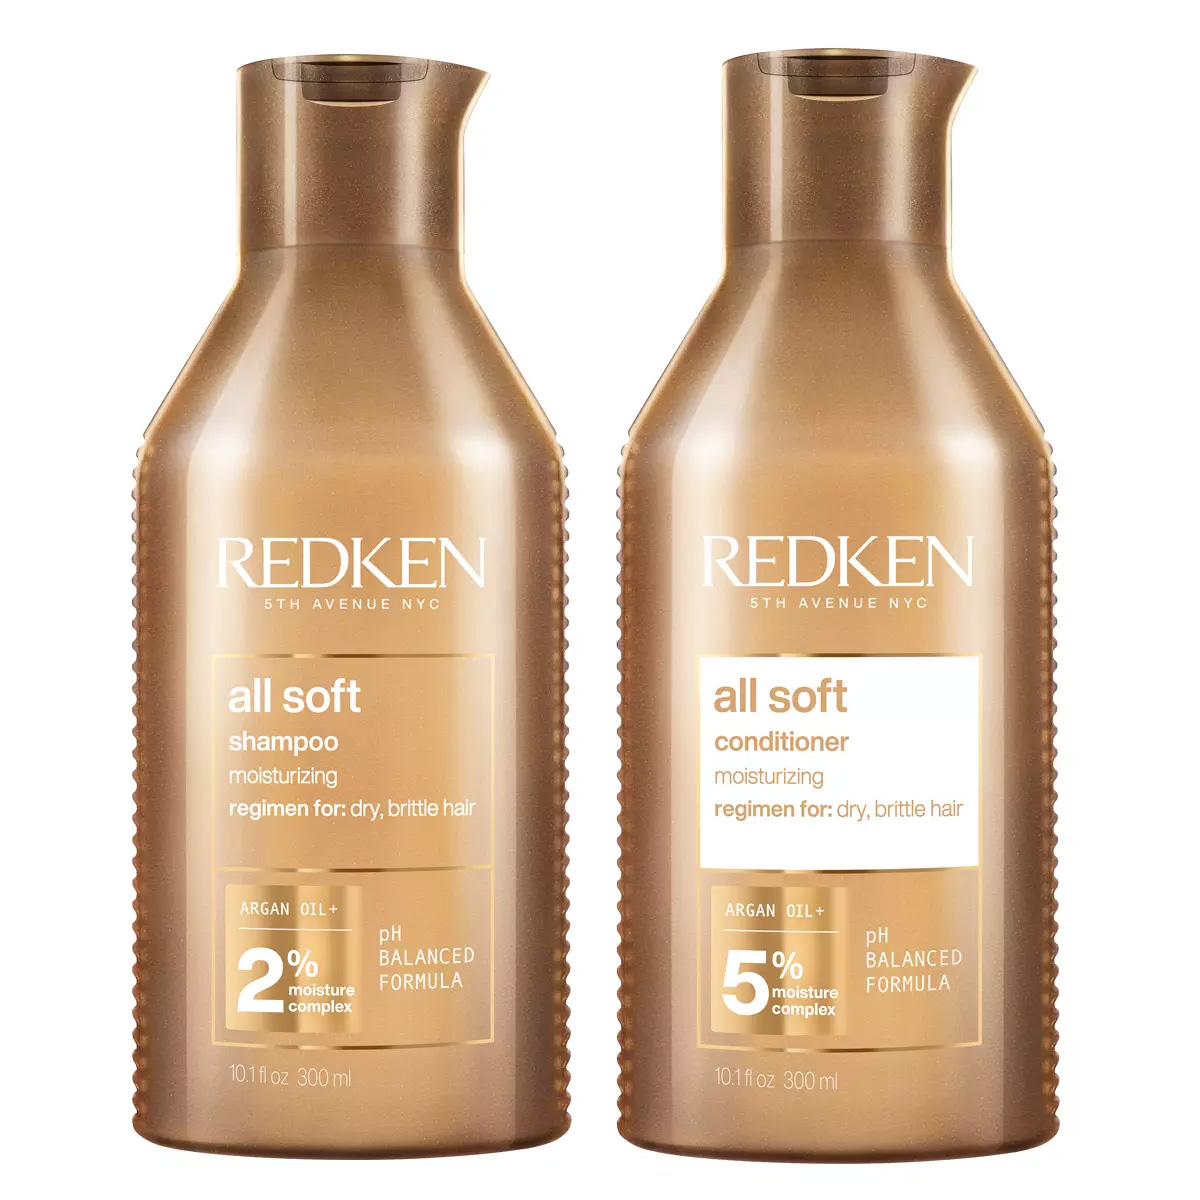 Купить Redken Набор: Шампунь для сухих и поврежденных волос, 300 мл + Кондиционер для сухих и поврежденных волос, 300 мл (Redken, Уход за волосами), США